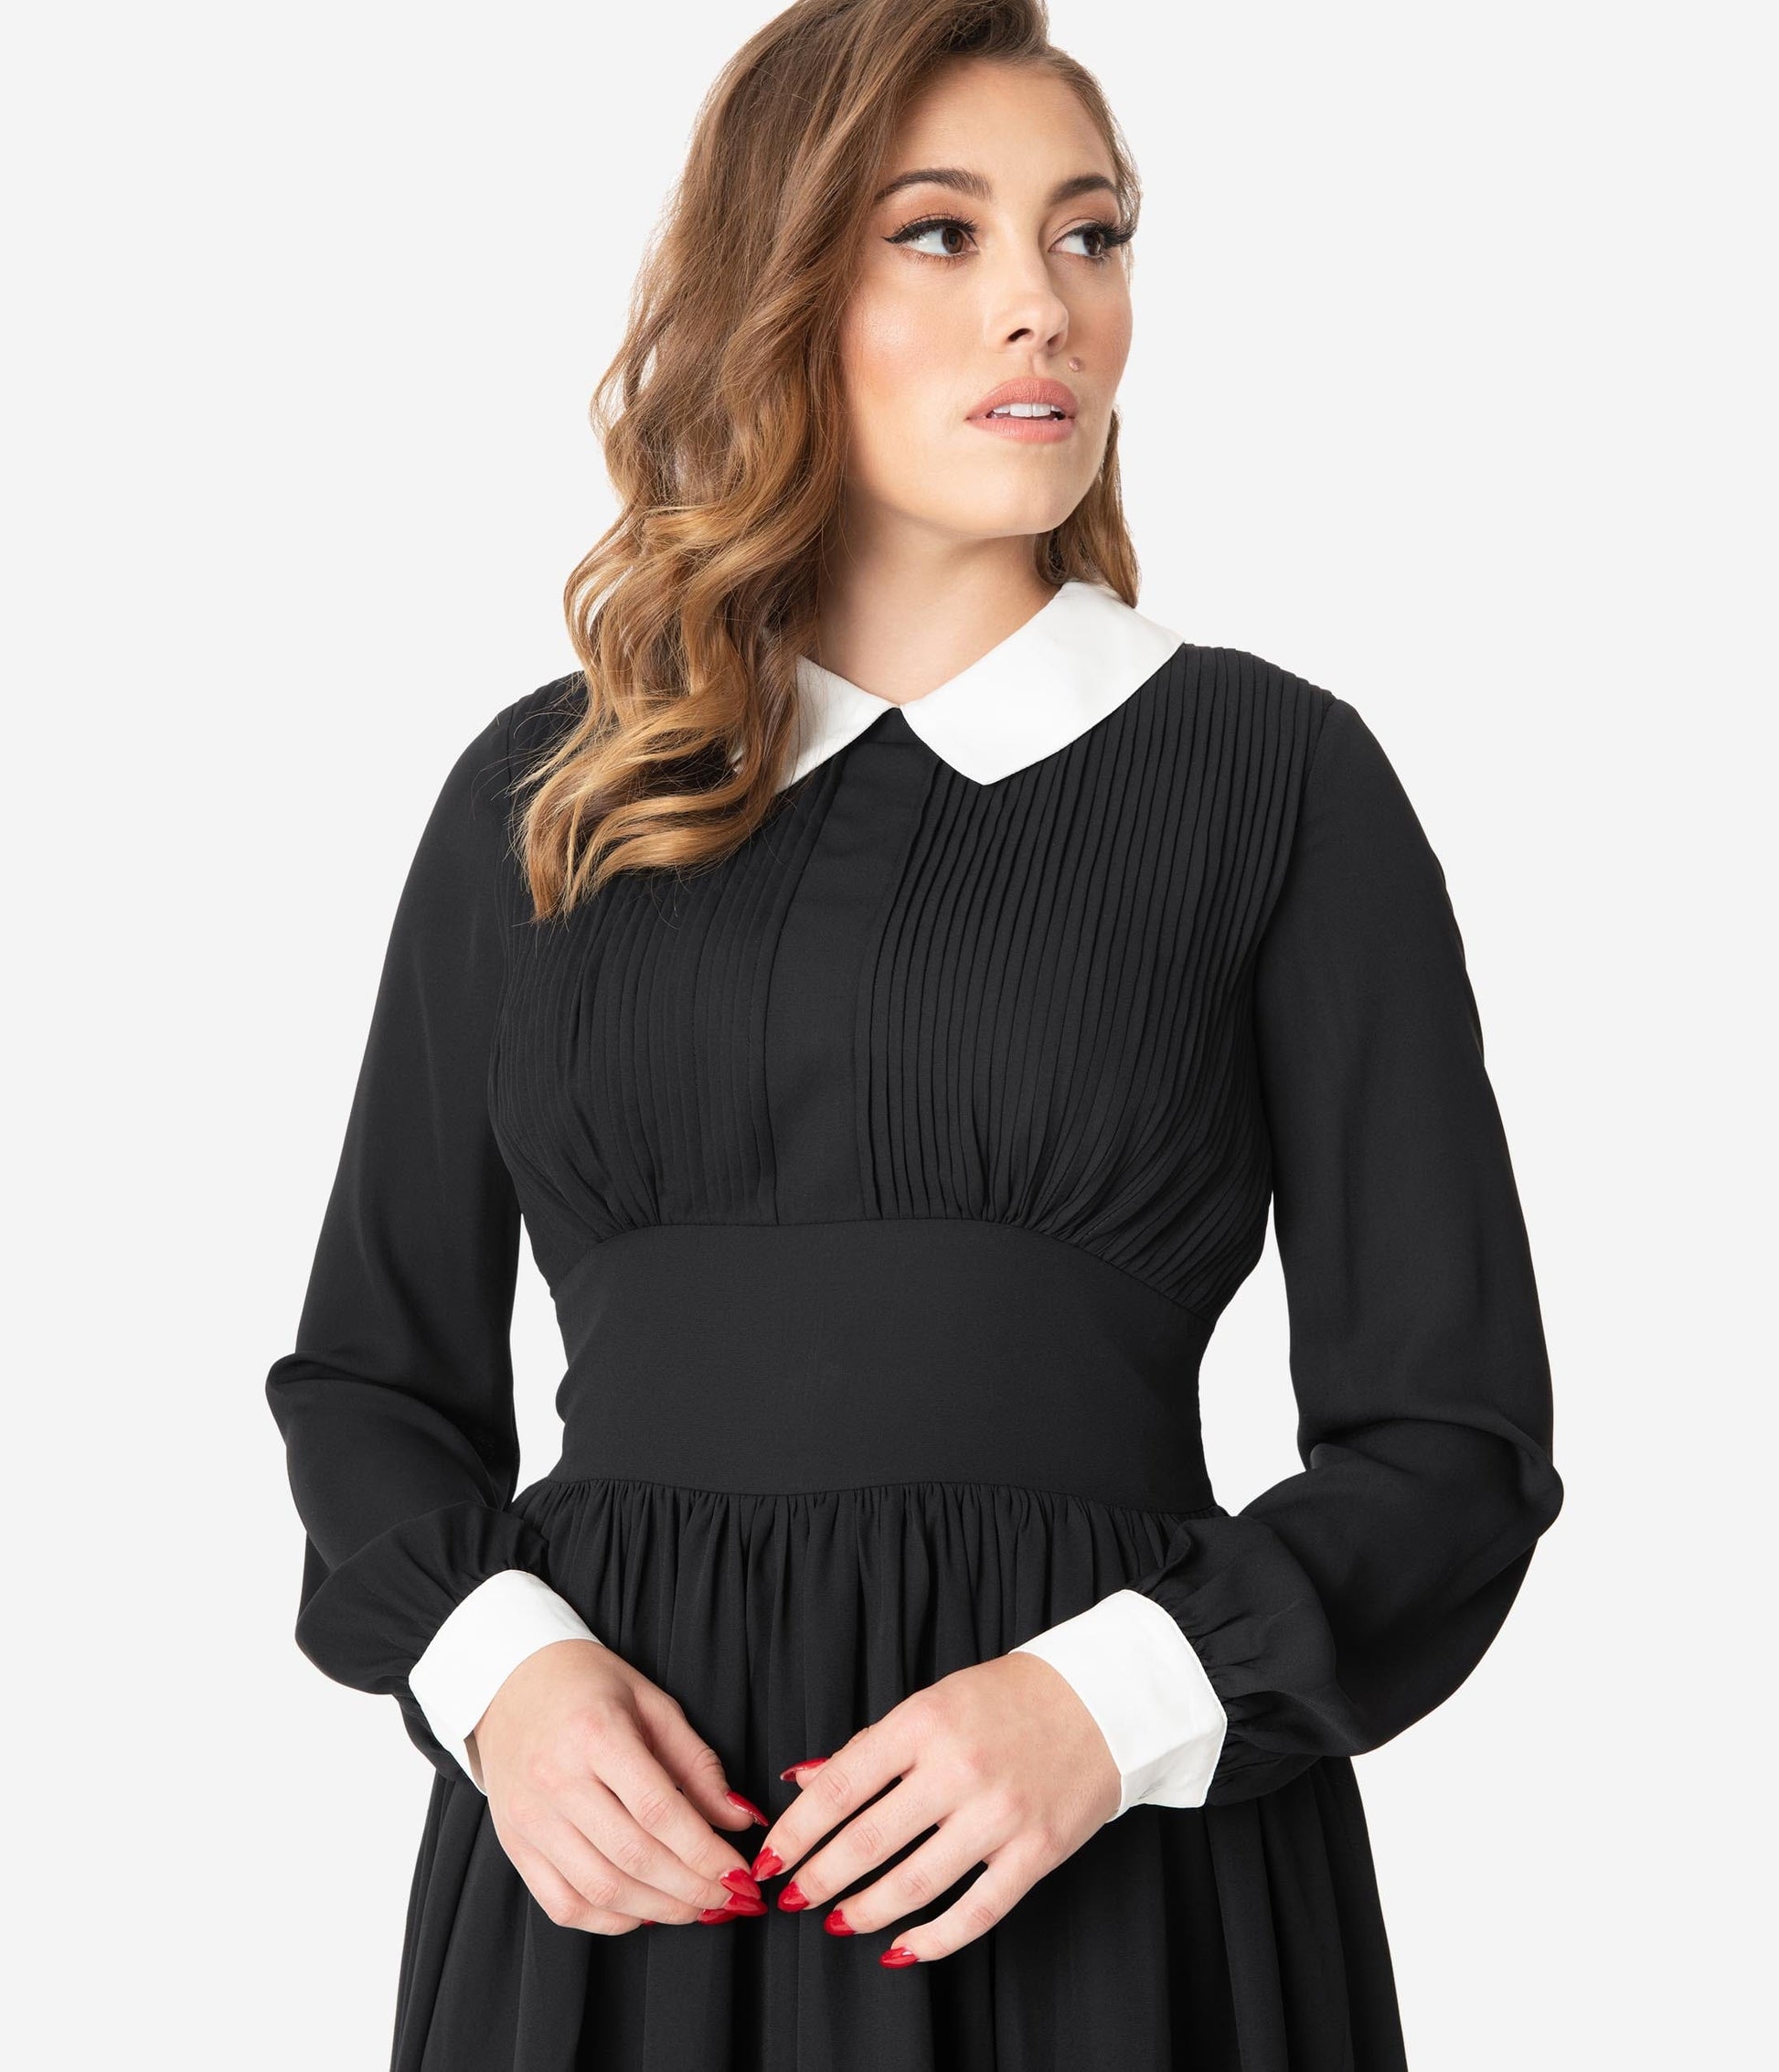 Unique Vintage 1940s Style Black & White Deirdre Shirt Dress